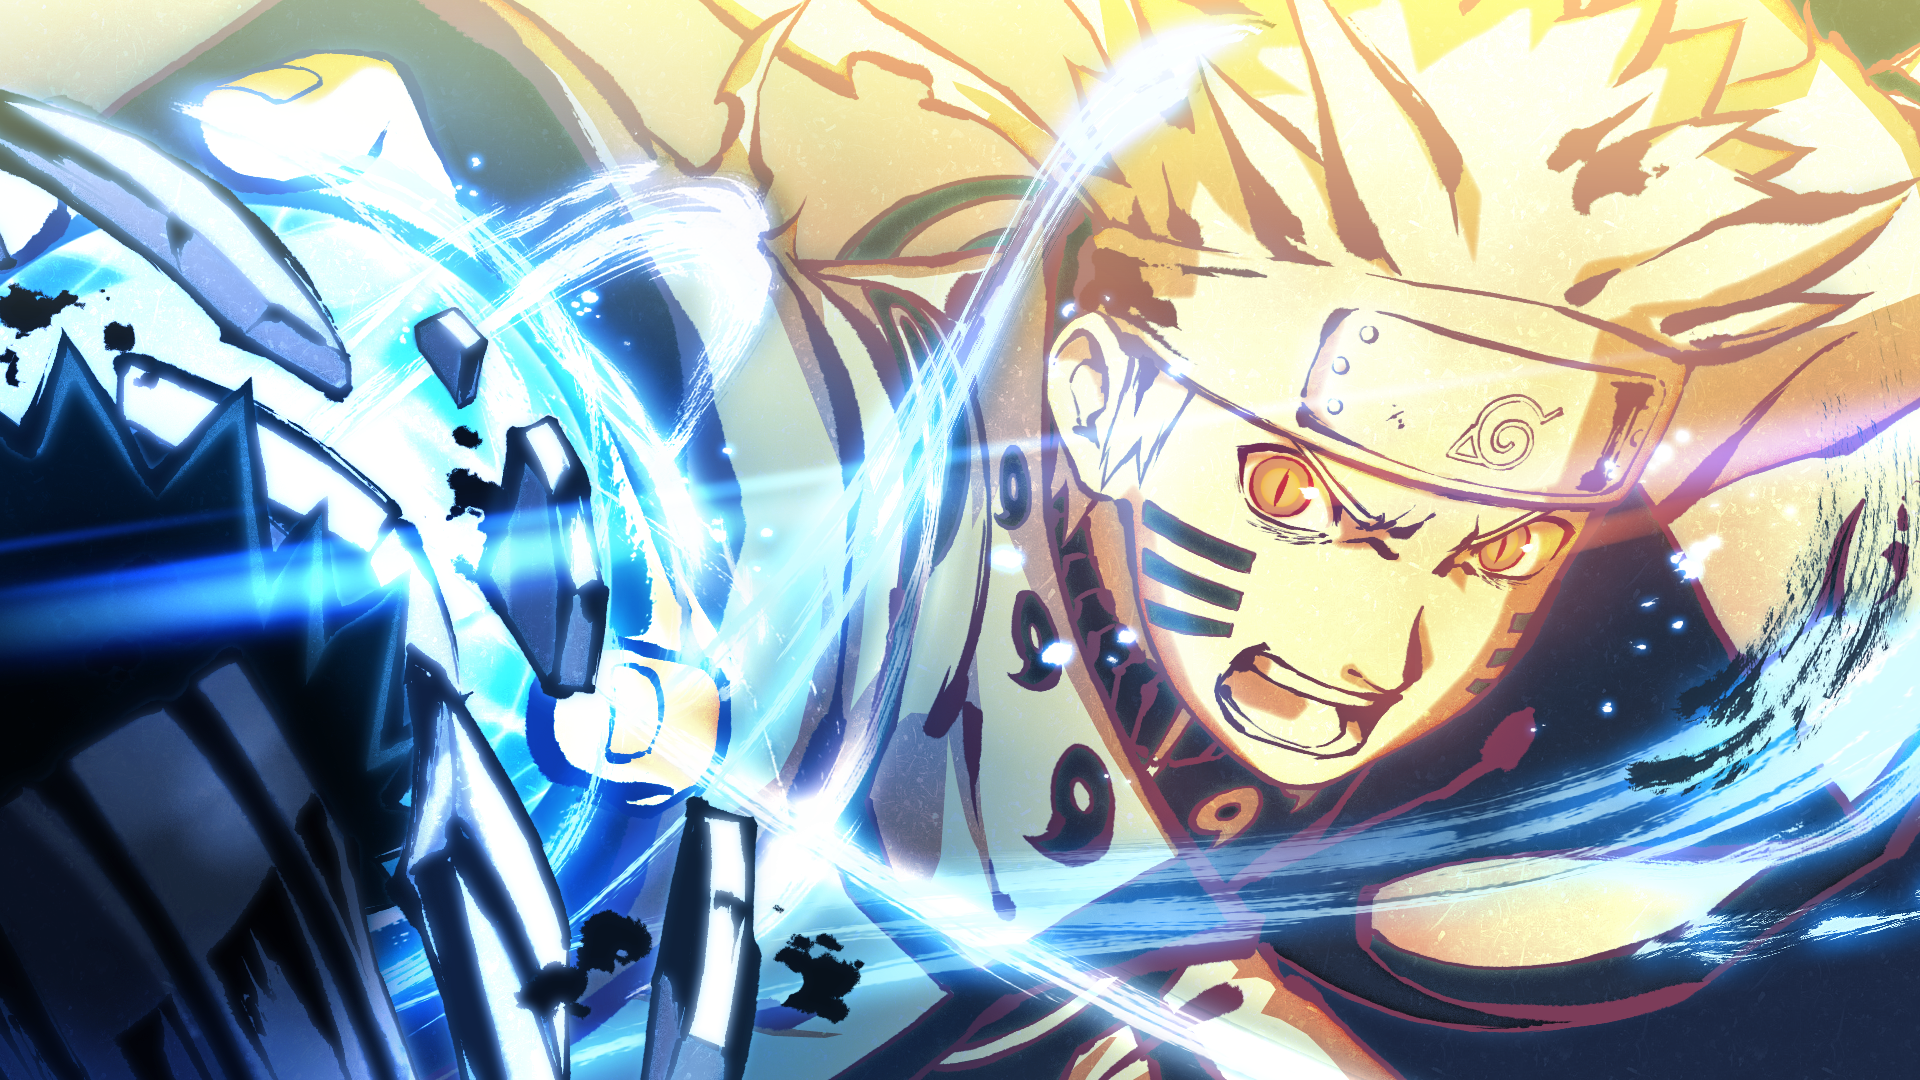 Shippuden: Cùng theo dõi Naruto và các Ninja đồng minh của cậu chiến đấu để bảo vệ thế giới khỏi tội ác, trong phần tiếp theo đầy kịch tính và hấp dẫn của bộ anime Naruto. Hãy sẵn sàng cho những trận chiến đầy nghẹt thở và bất ngờ!